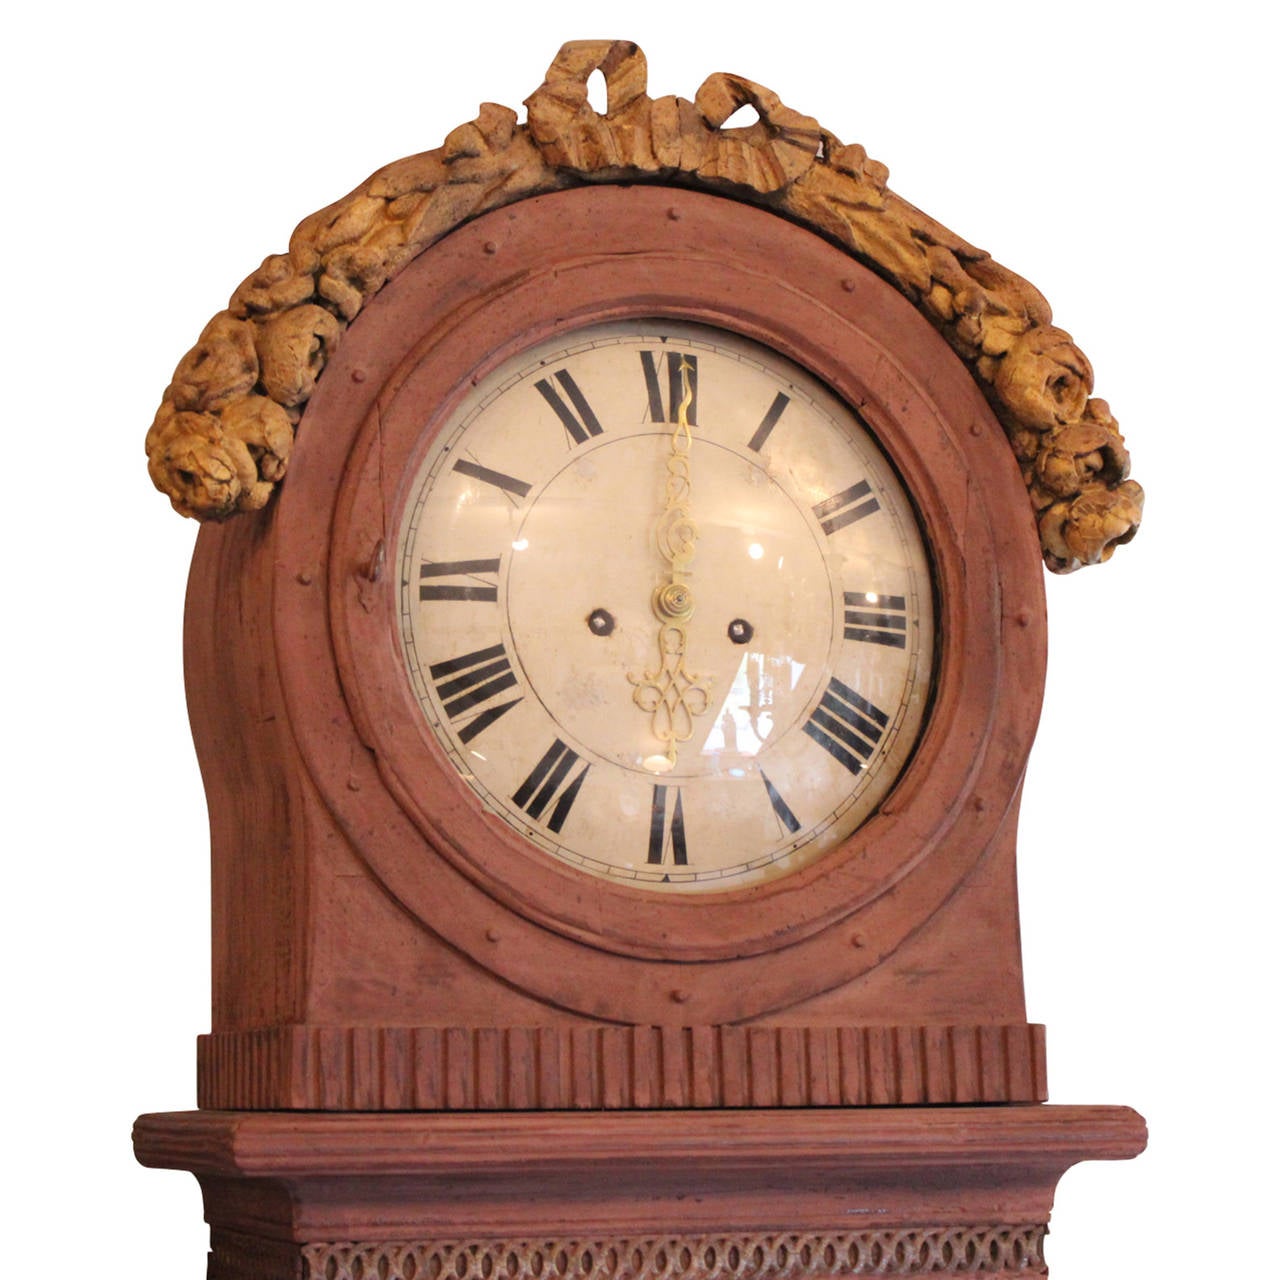 Entrez dans la riche histoire de l'artisanat danois avec cette extraordinaire horloge ancienne de style gustavien, véritable témoignage de l'élégance de la fin du XVIIIe siècle. Originaire du Danemark et fabriqué vers les années 1780, ce garde-temps